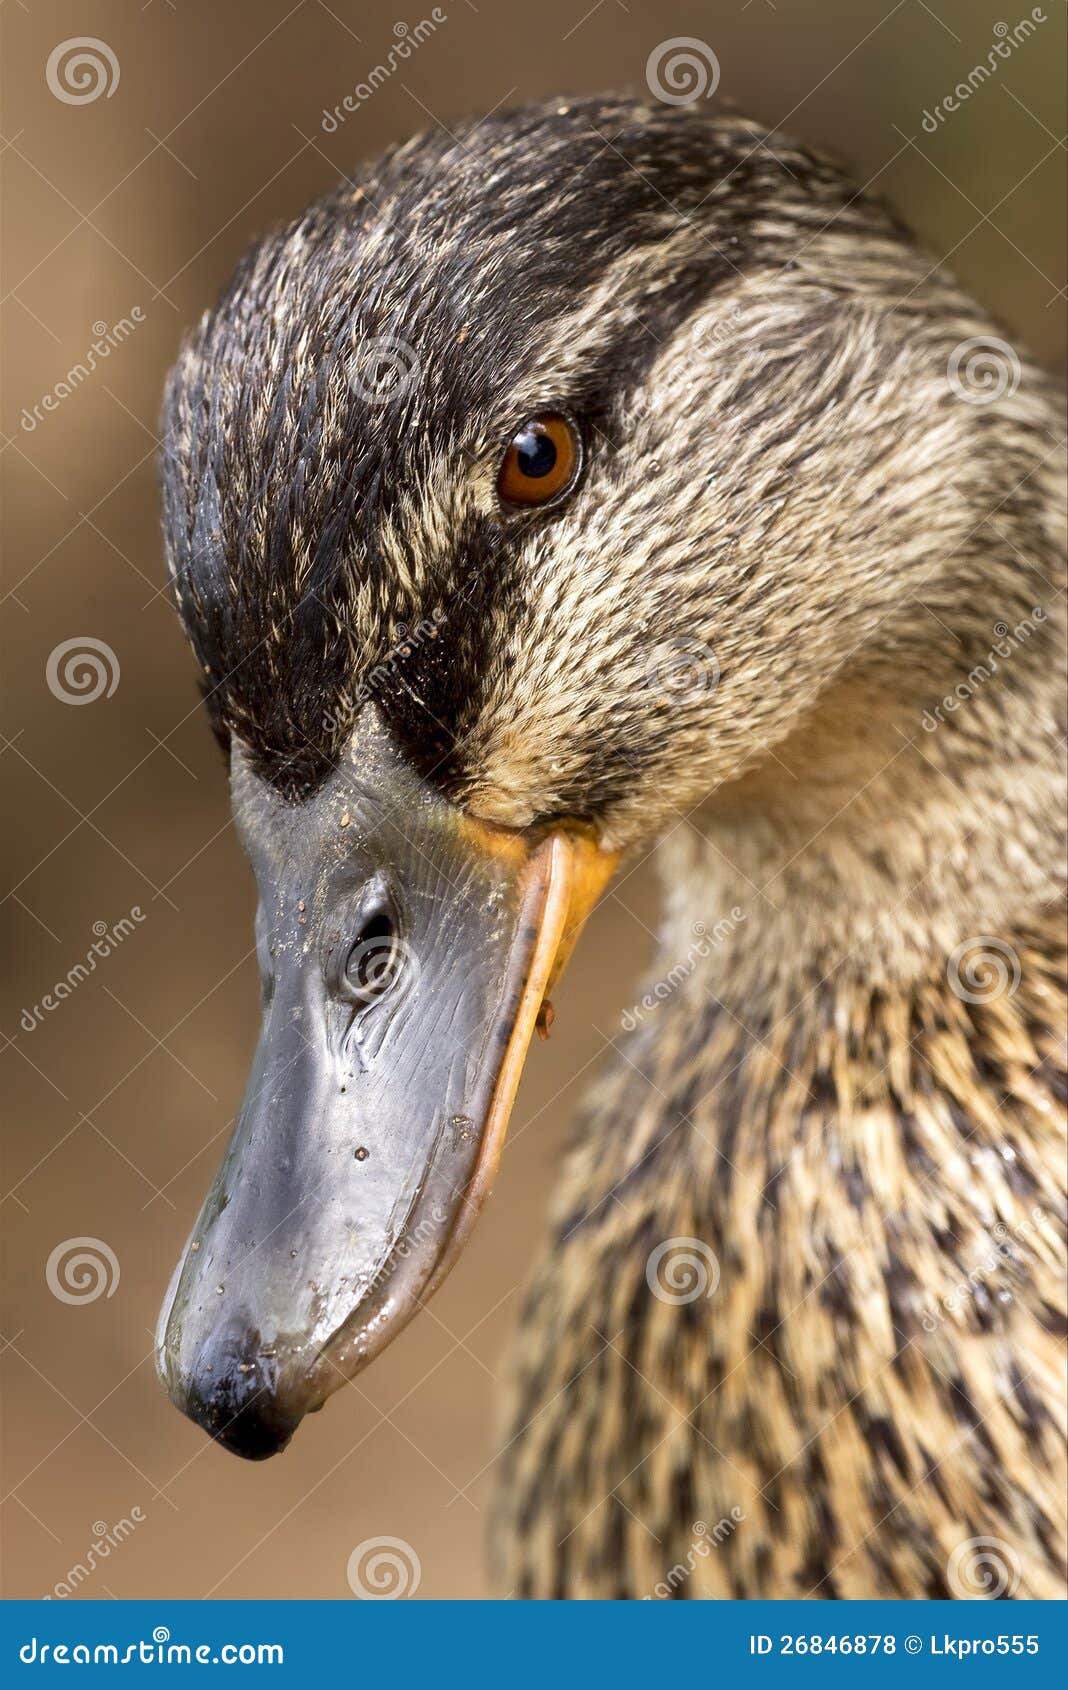 eye of a duck